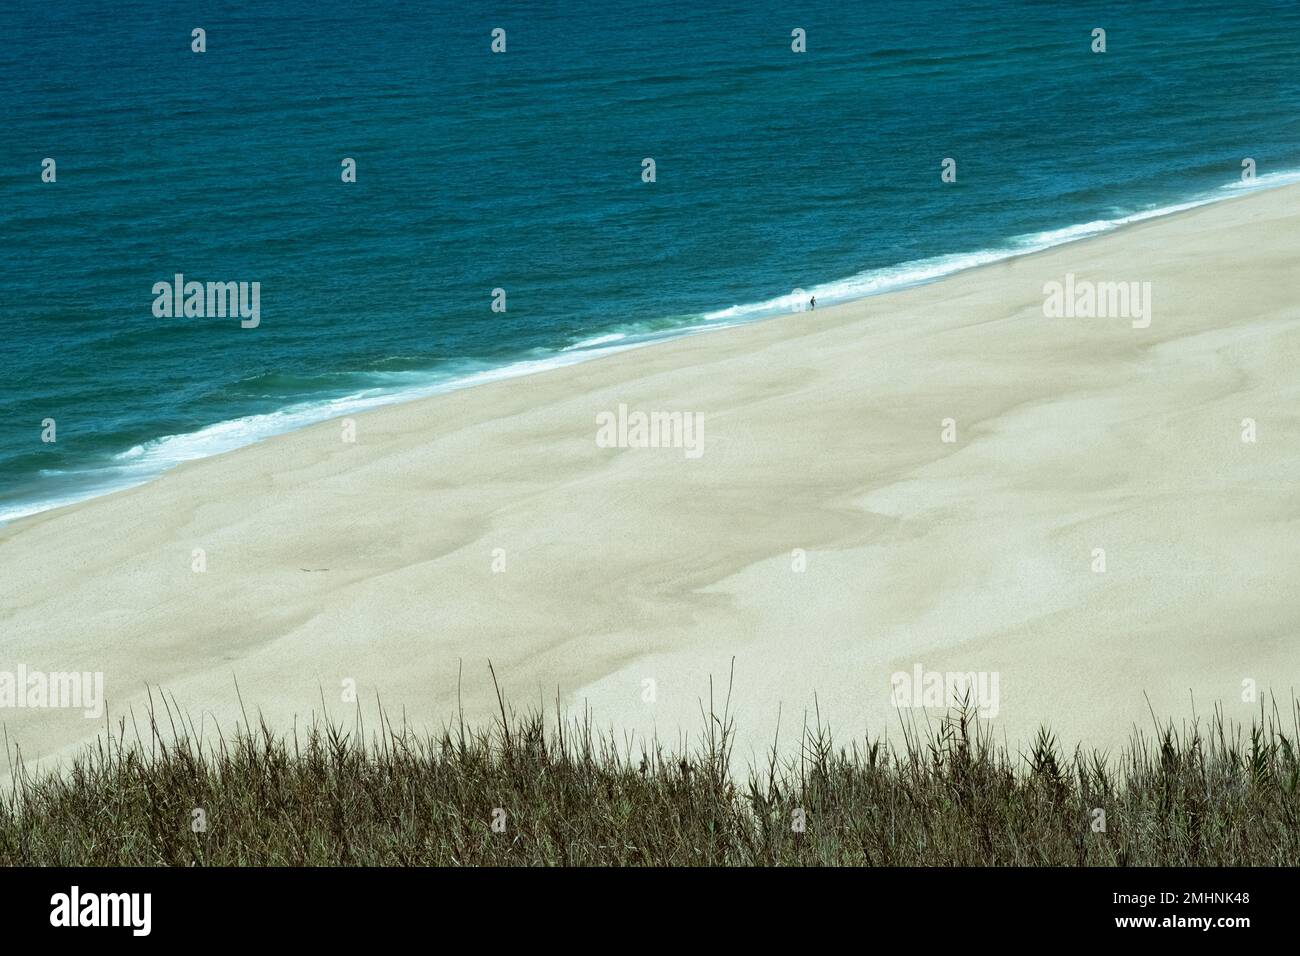 Verlassener Strand, Meer, Sandstrand, melancholisches Meer, minimale Aussicht. Konzept von Einsamkeit, Reisen, Natur, Urlaub, Traurigkeit Freiheit Insel und Geist Stockfoto